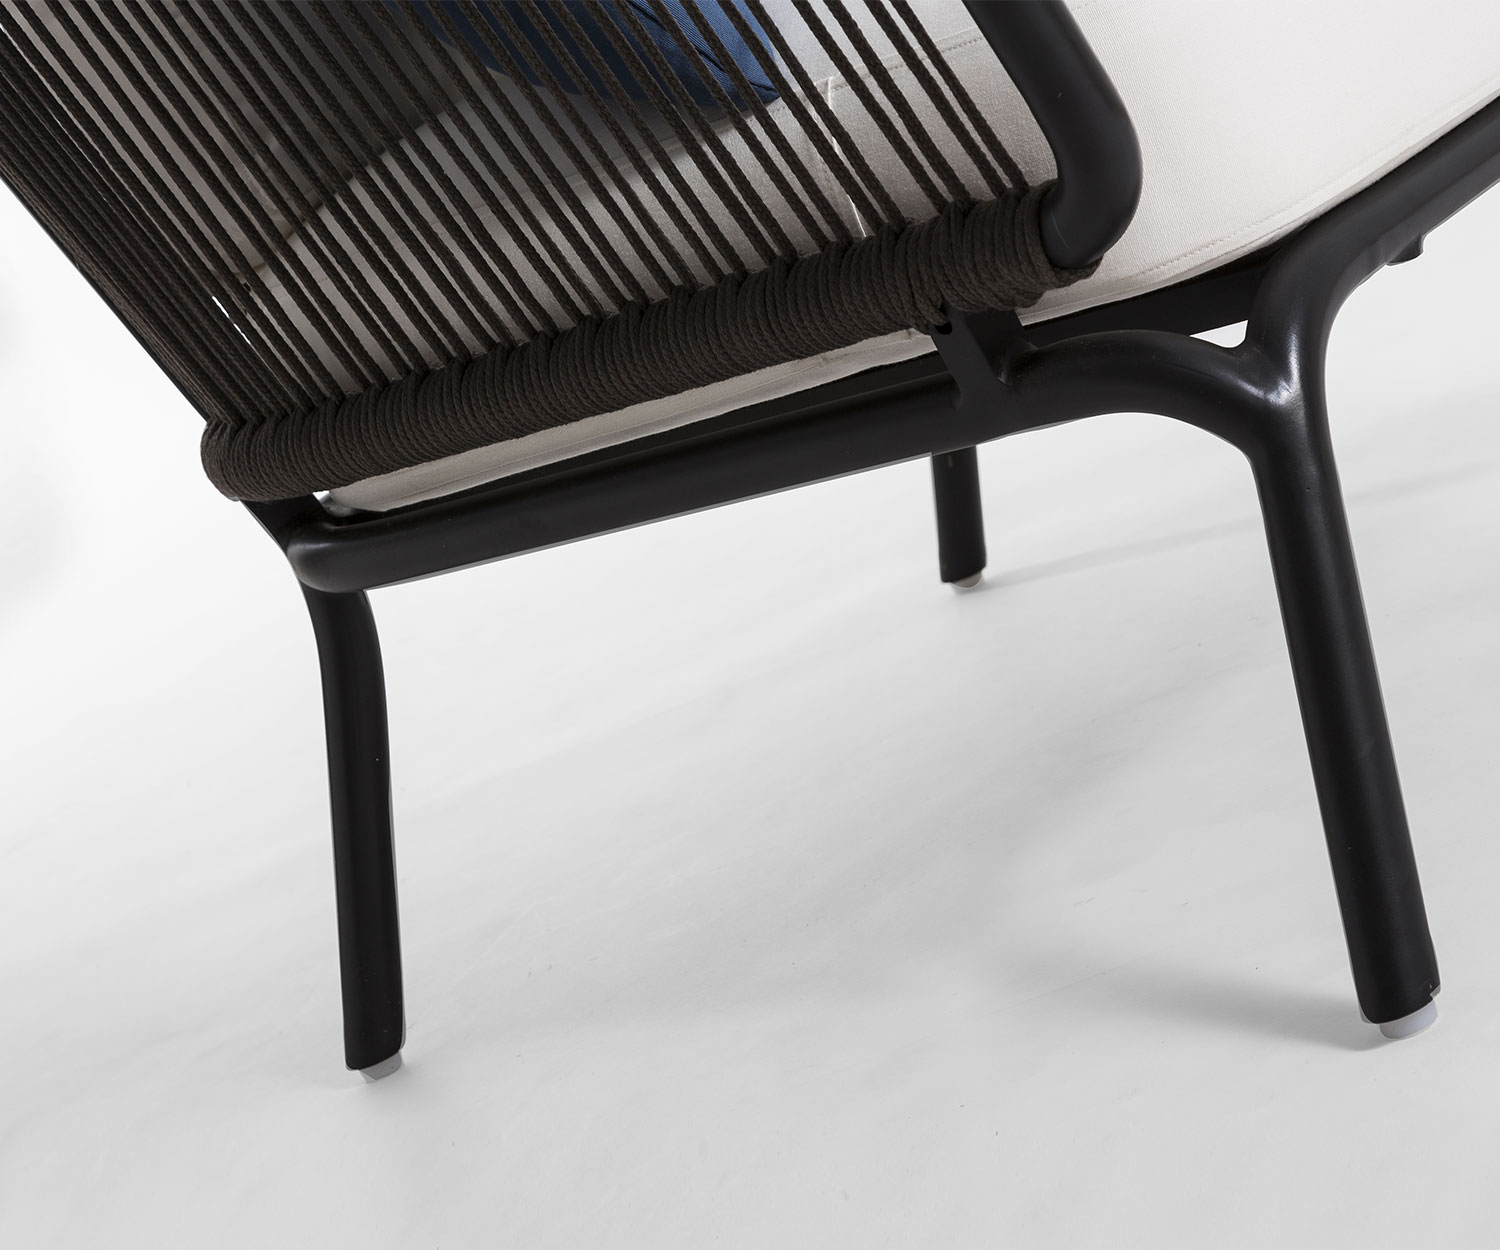 Haute qualité Oasiq Yland Chaise longue 2 places Canapé design en détail Pieds et coussins